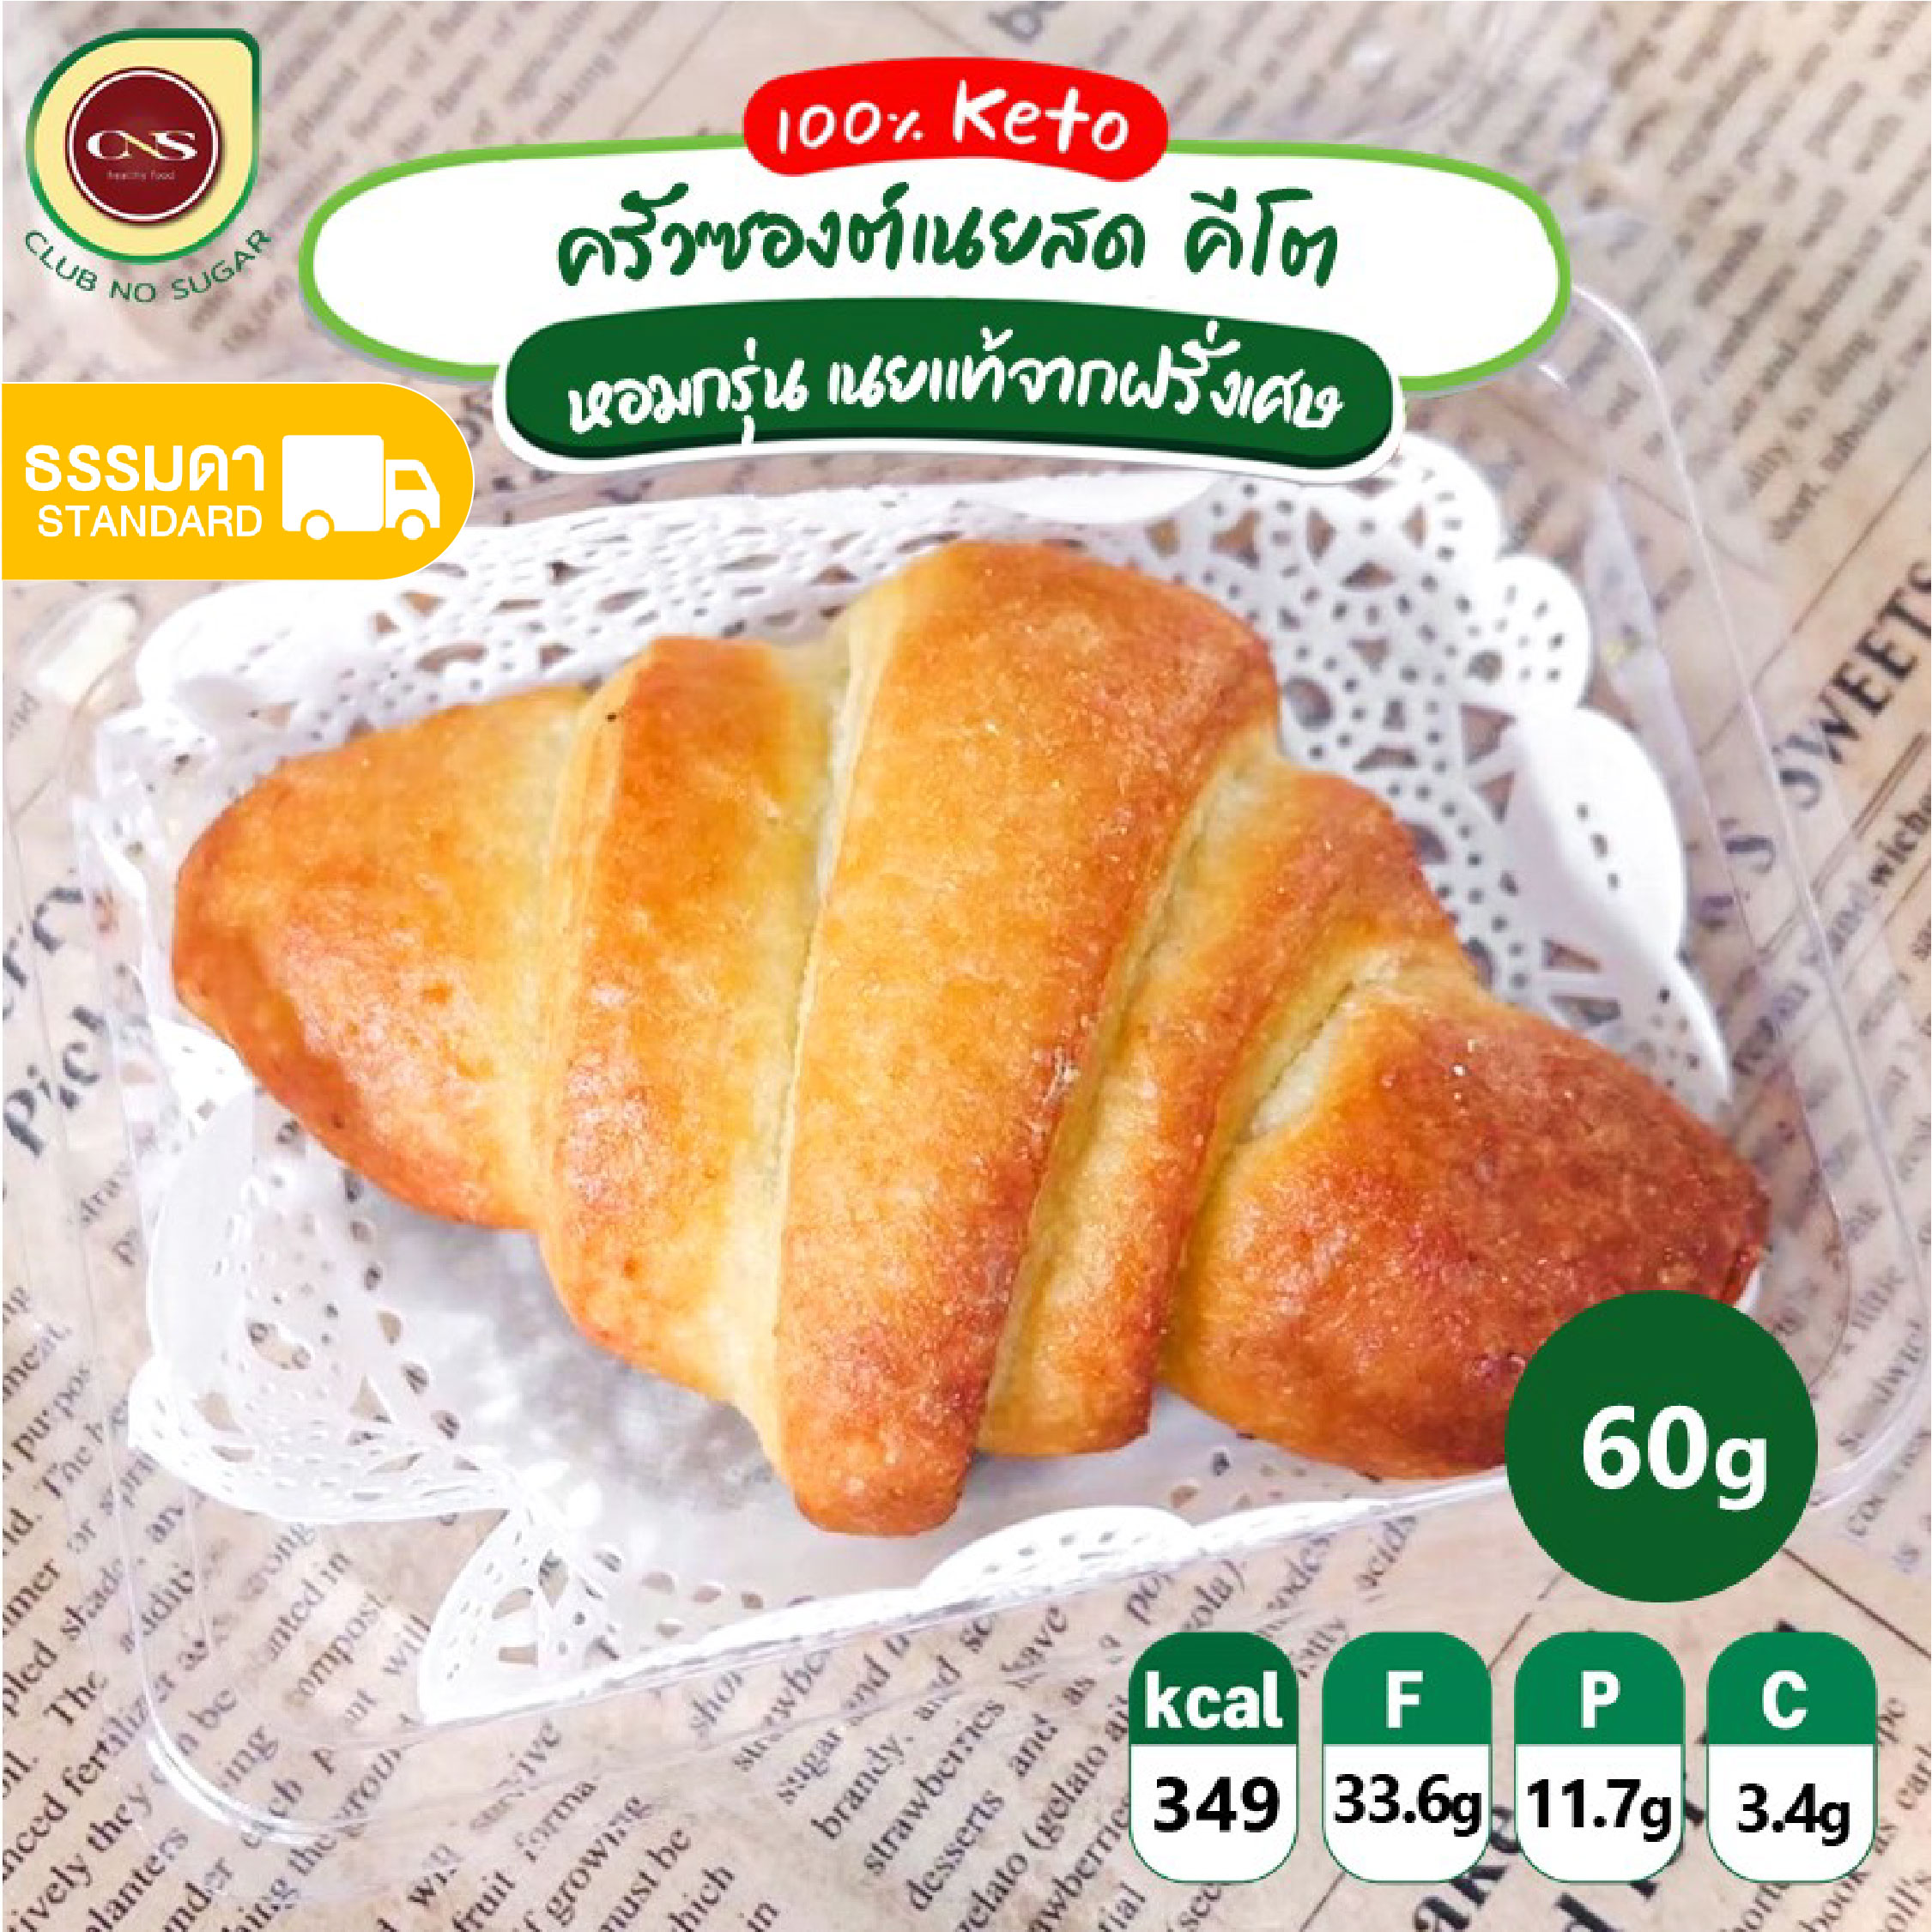 ครัวซองต์คีโต Croissant KETO 🥐 ครังซองต์เนยสด คีโต มี 4 รส อร่อยหอมมากก ขนมคีโต